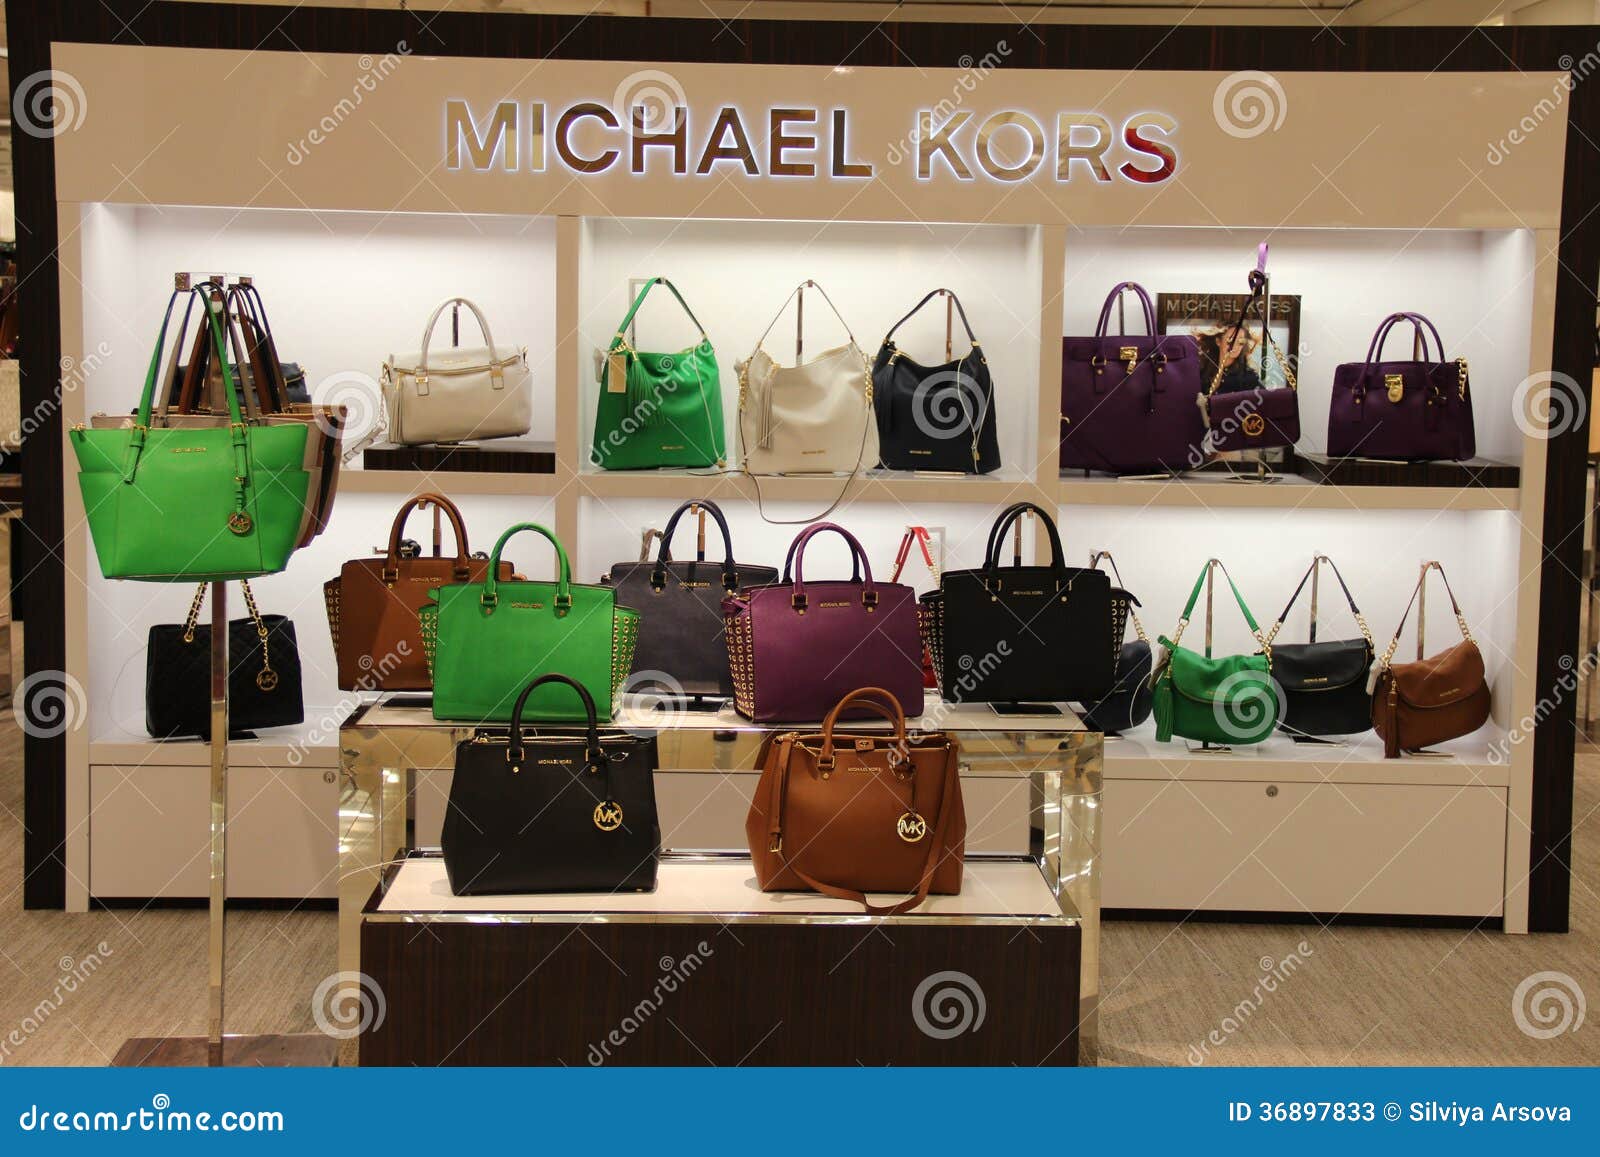 Michael Kors Handbag Fashion Store 